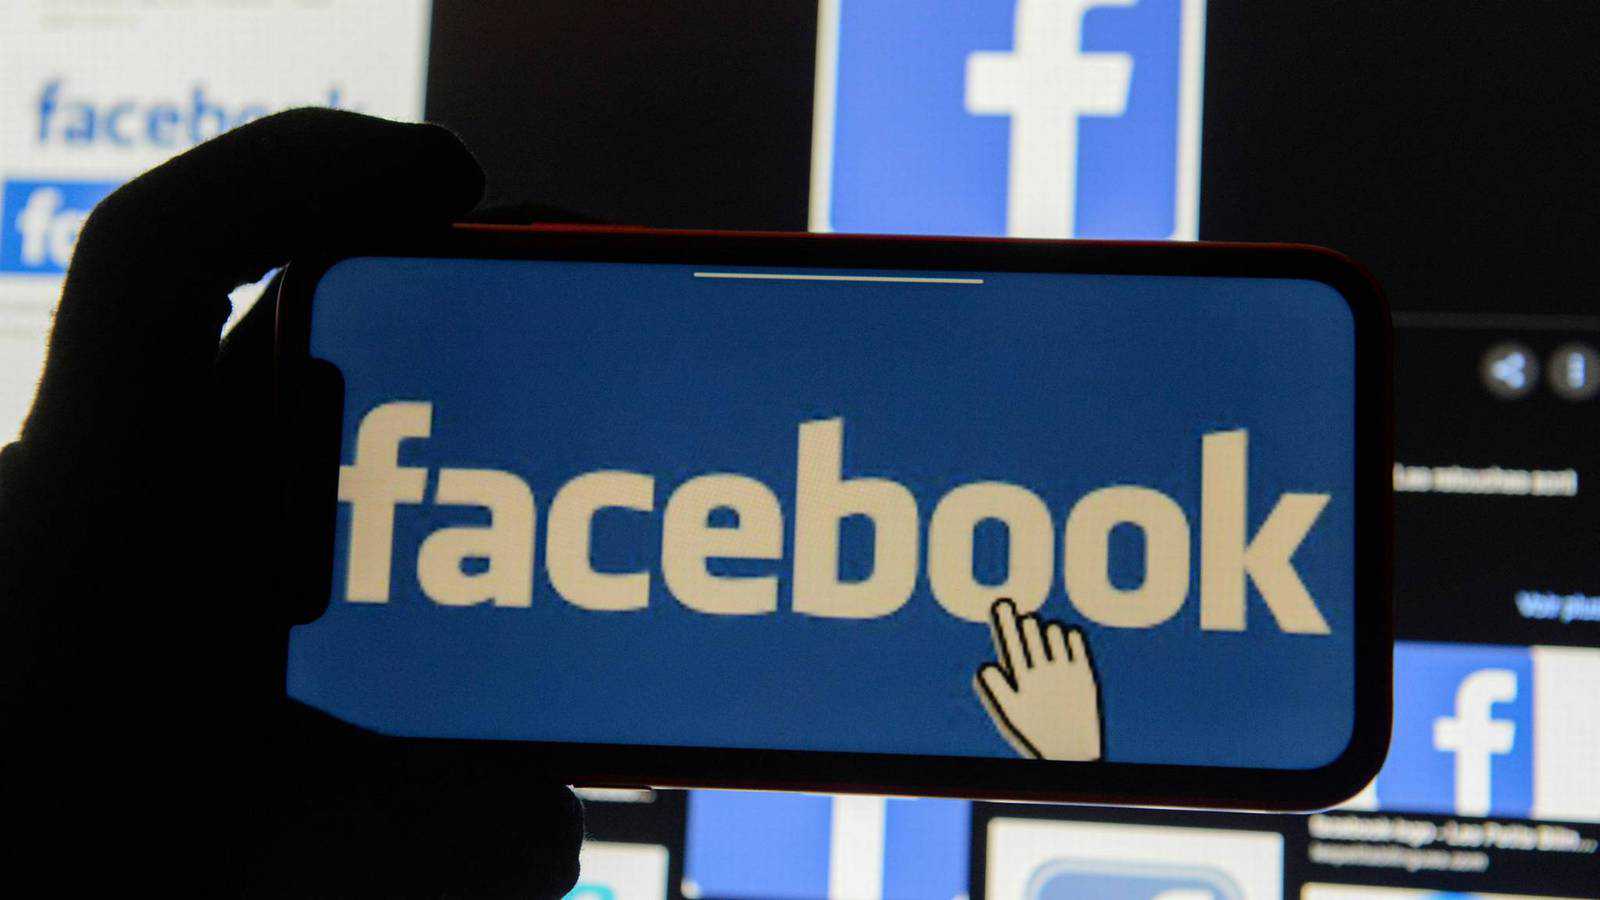 فيسبوك تدفع ملايين الدولارات مقابل المحتوى